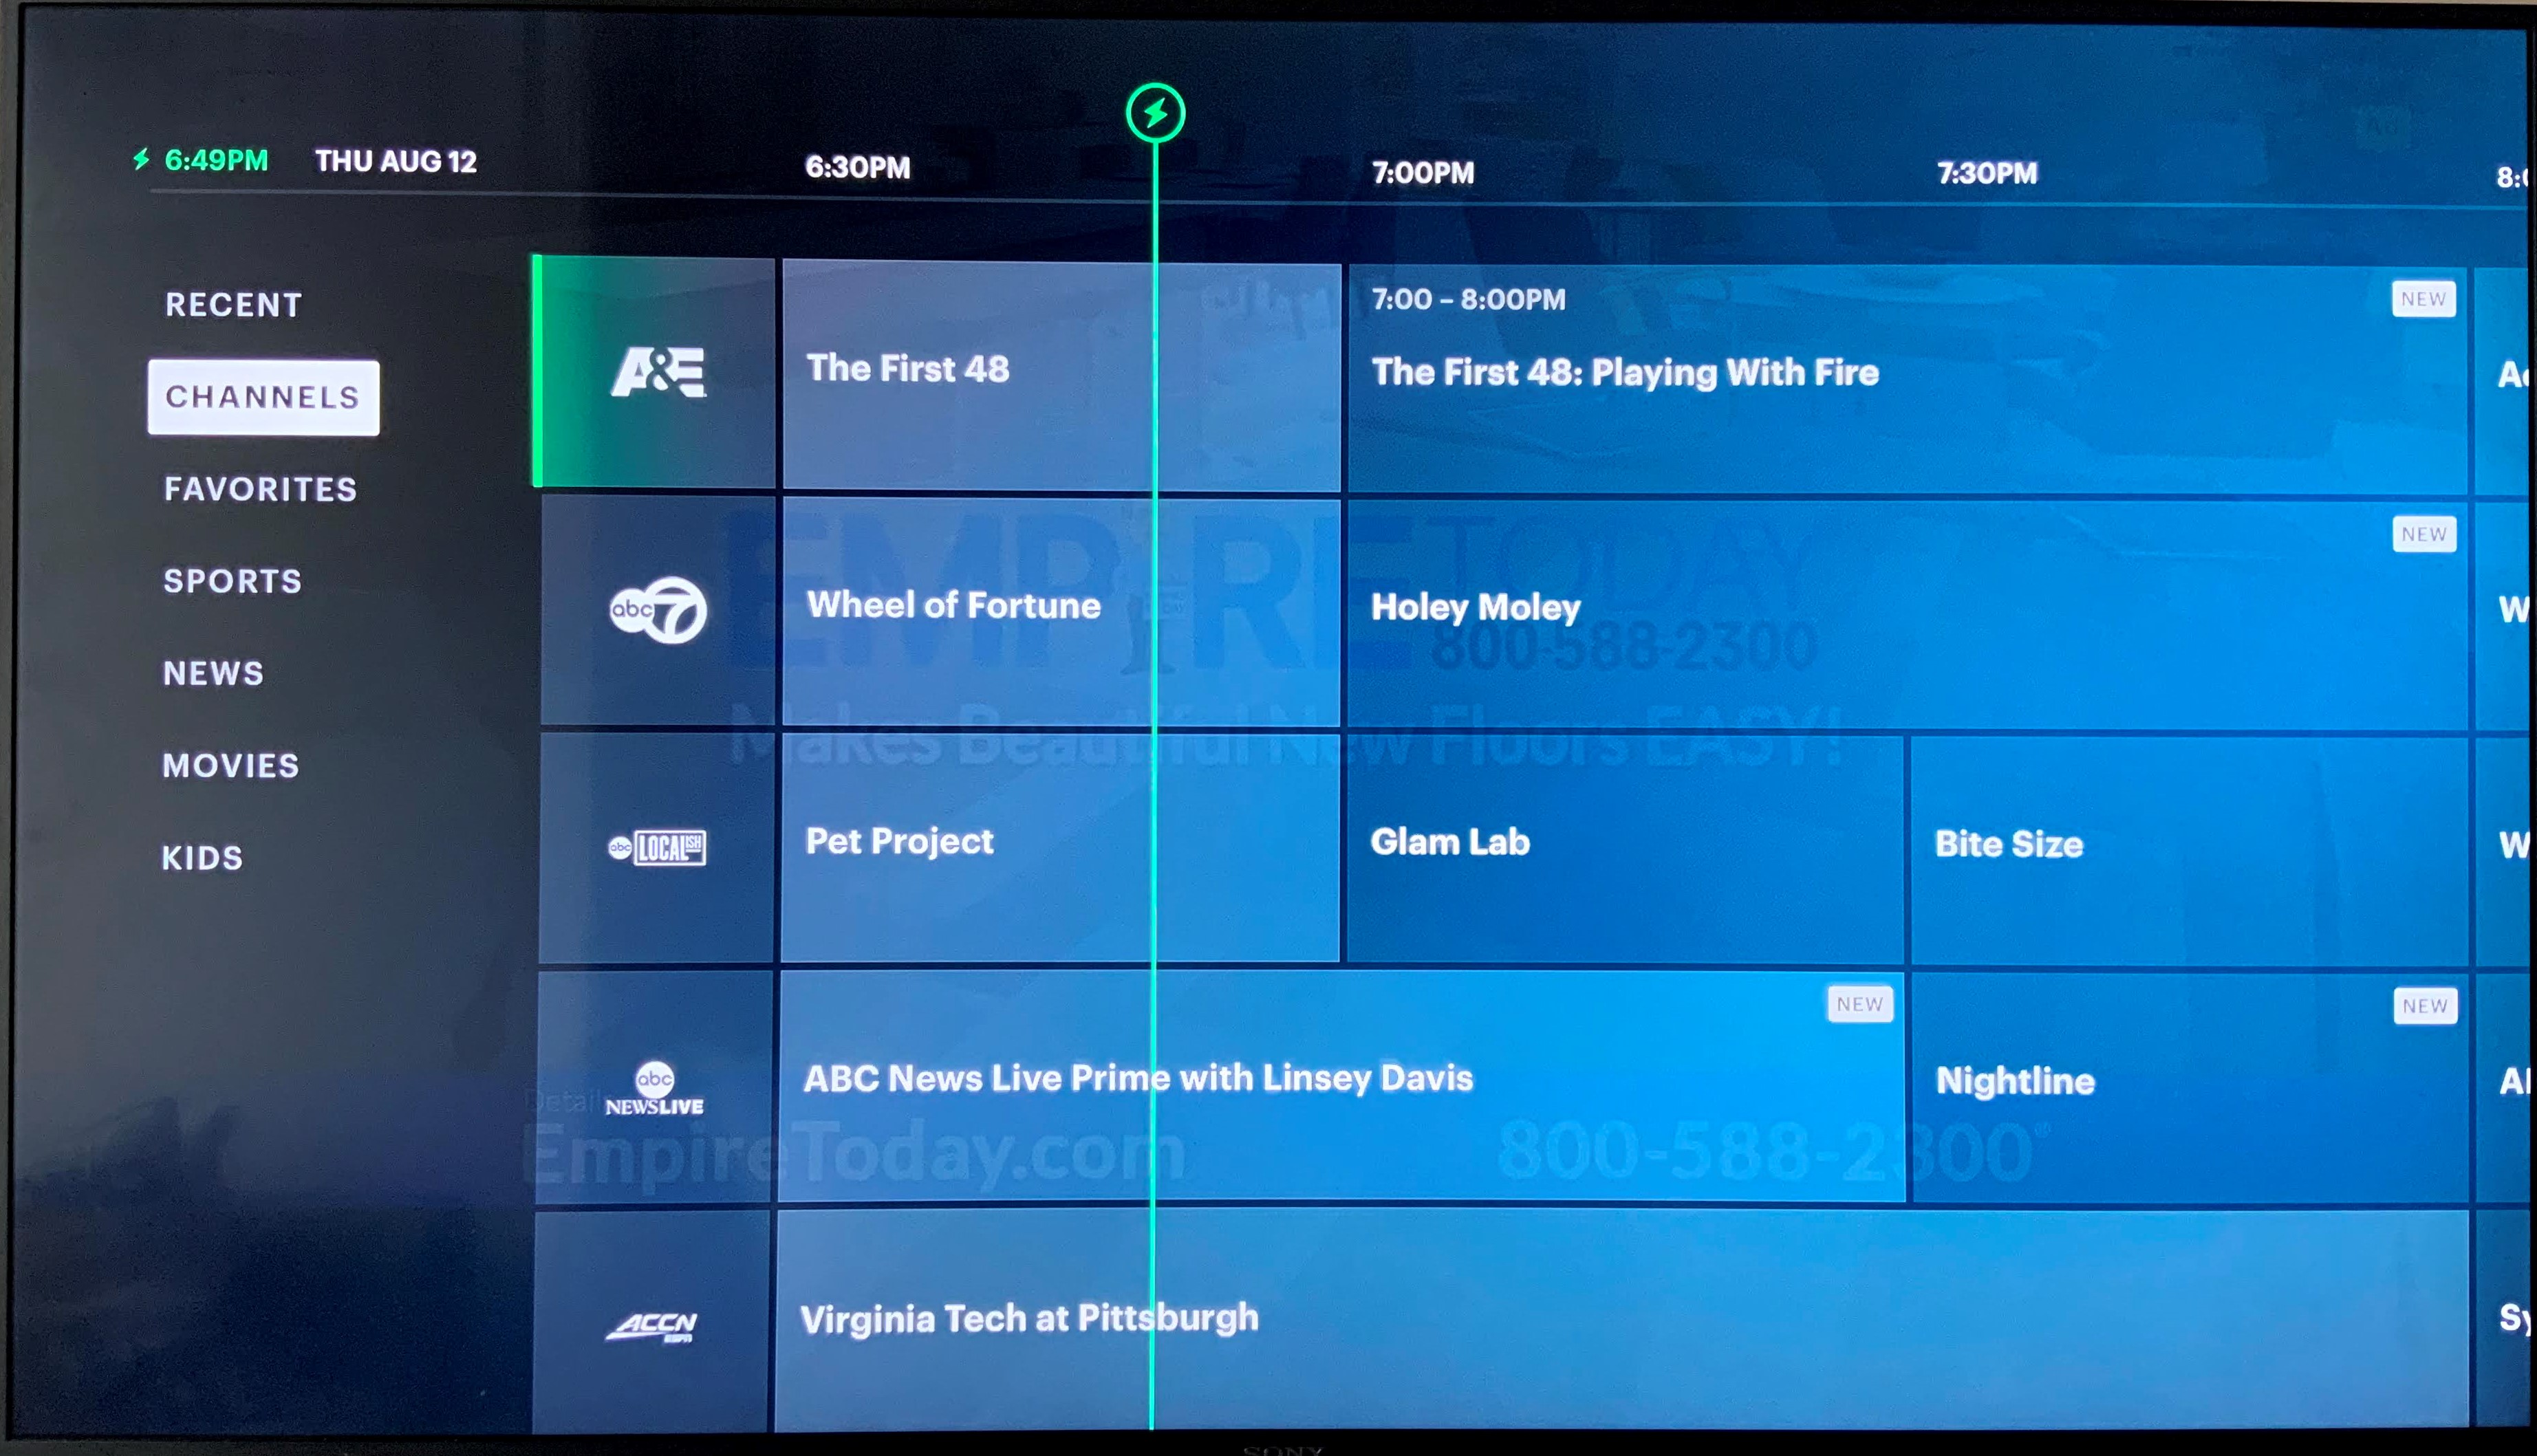 ¿Cómo puedo llegar a la televisión en vivo en Hulu en mi televisor?